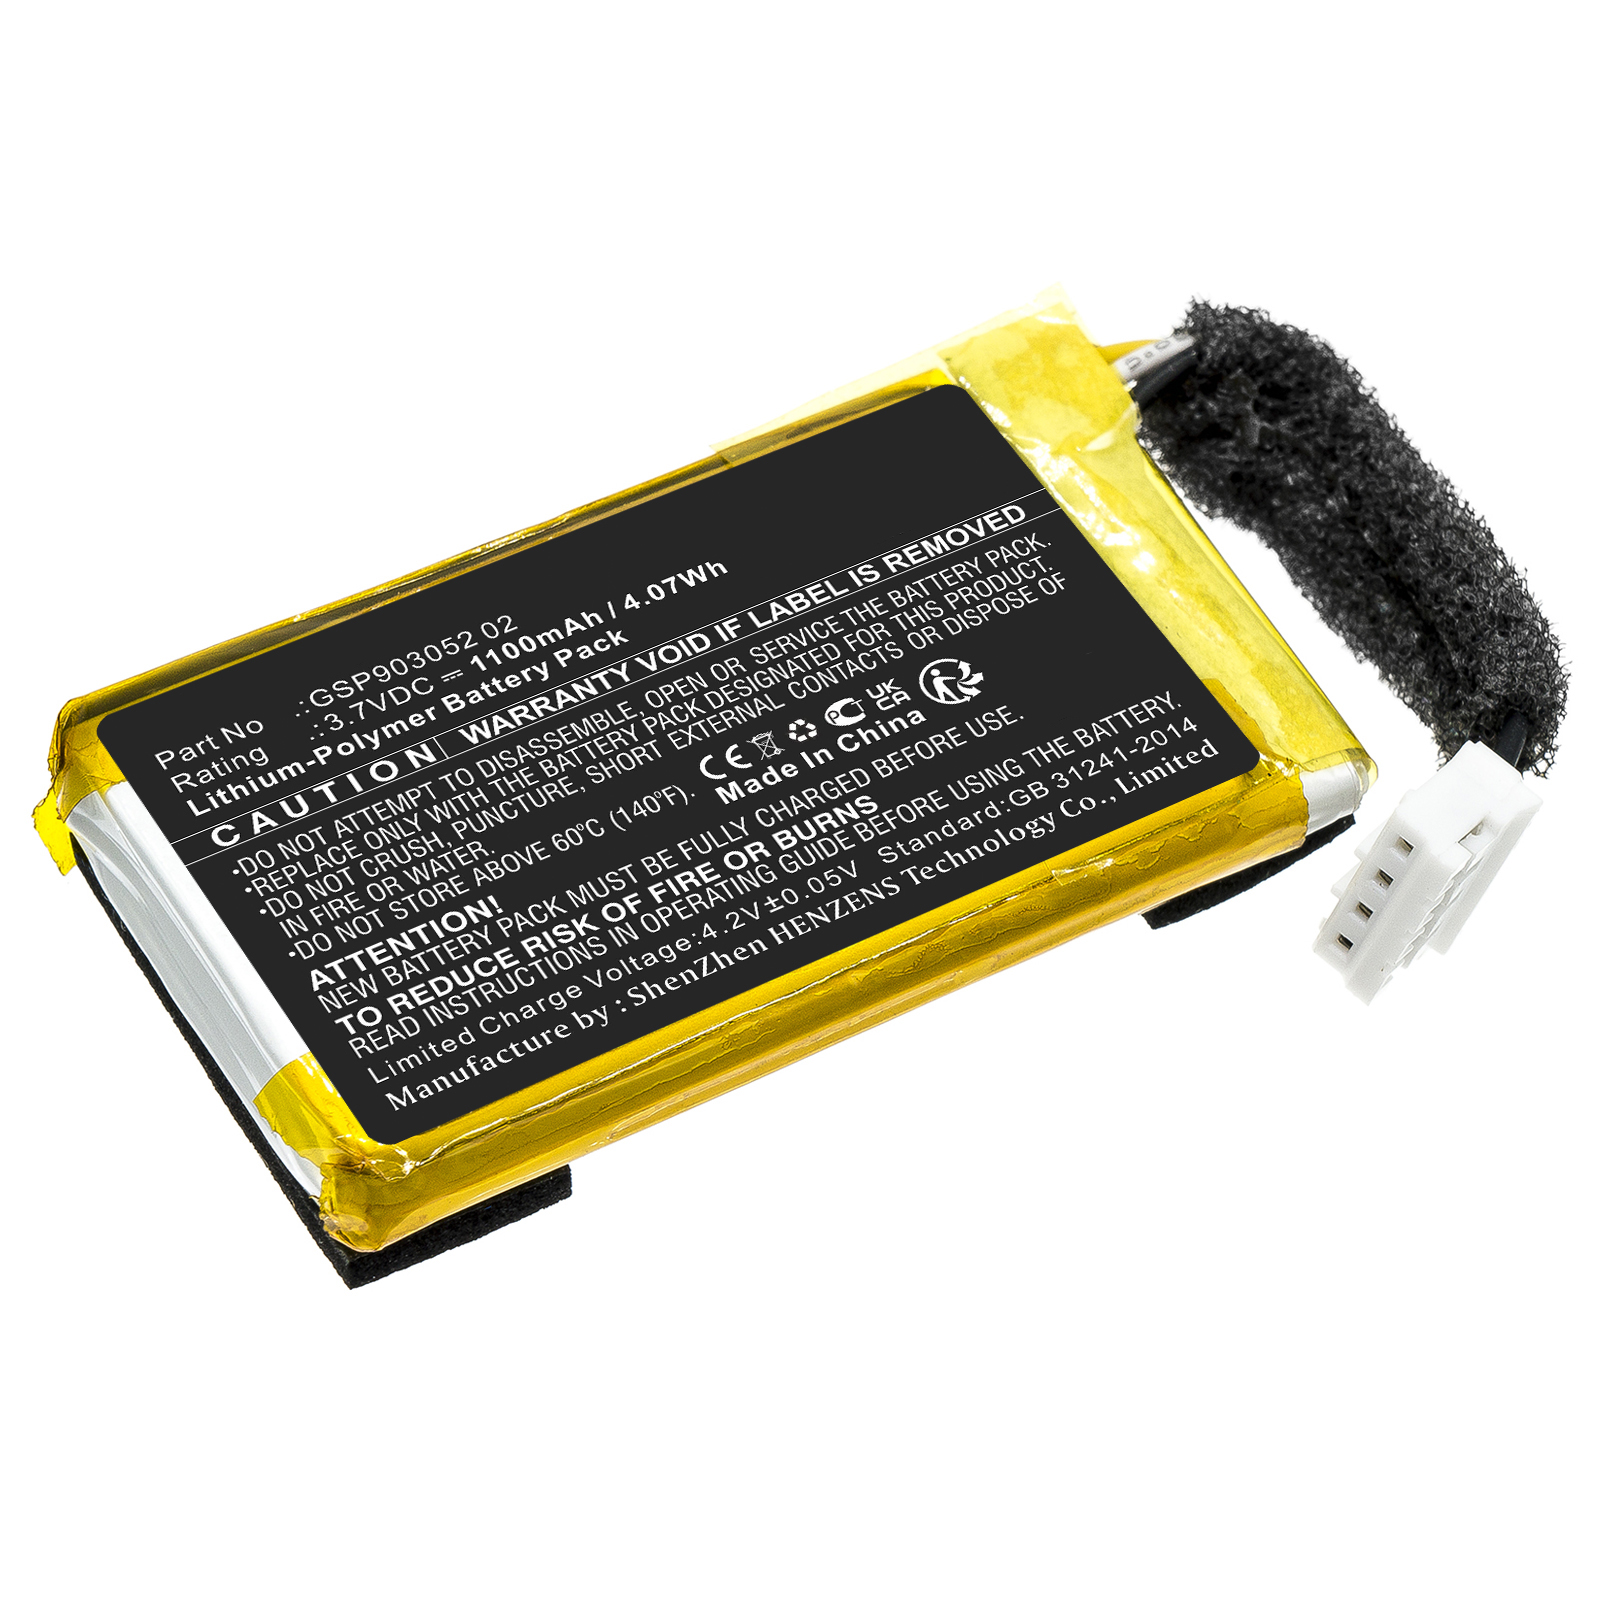 Batteries for JBLSpeaker